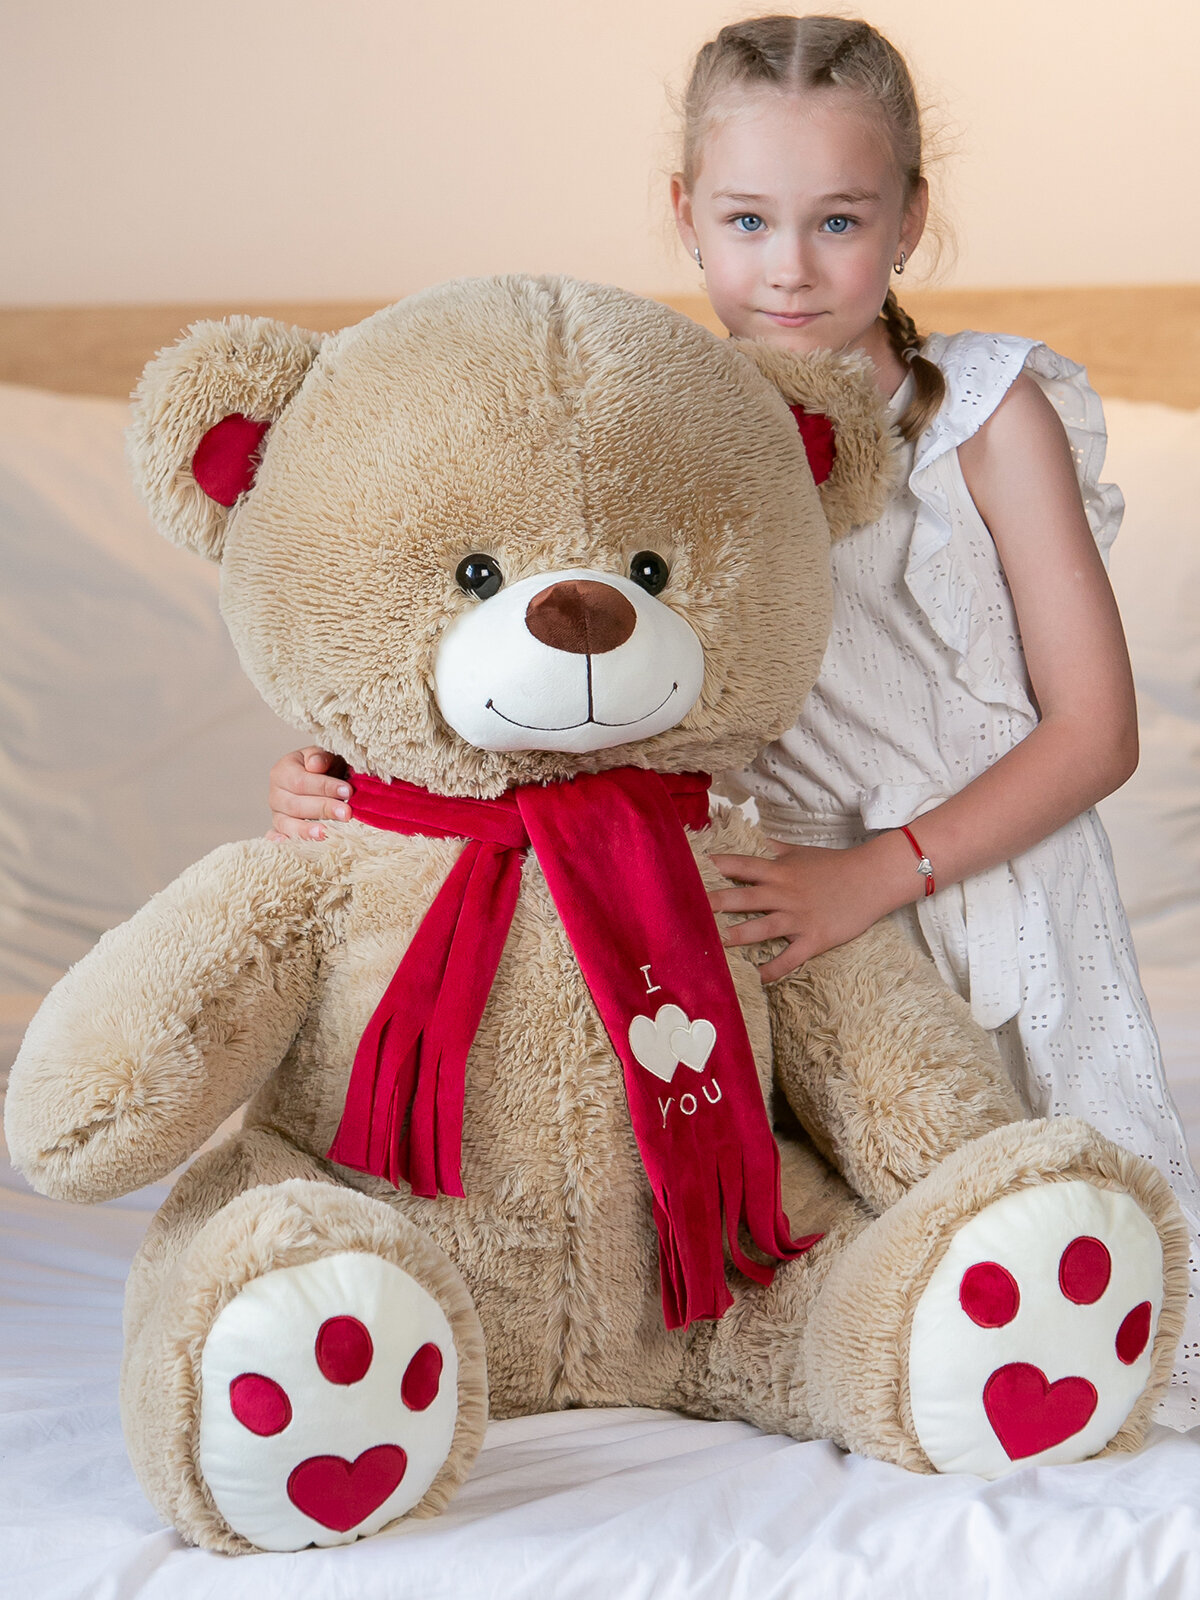 Мягкая игрушка огромный плюшевый медведь Кельвин 120 см, большой мишка, подарок девушке, ребенку на день рождение, цвет кофейный